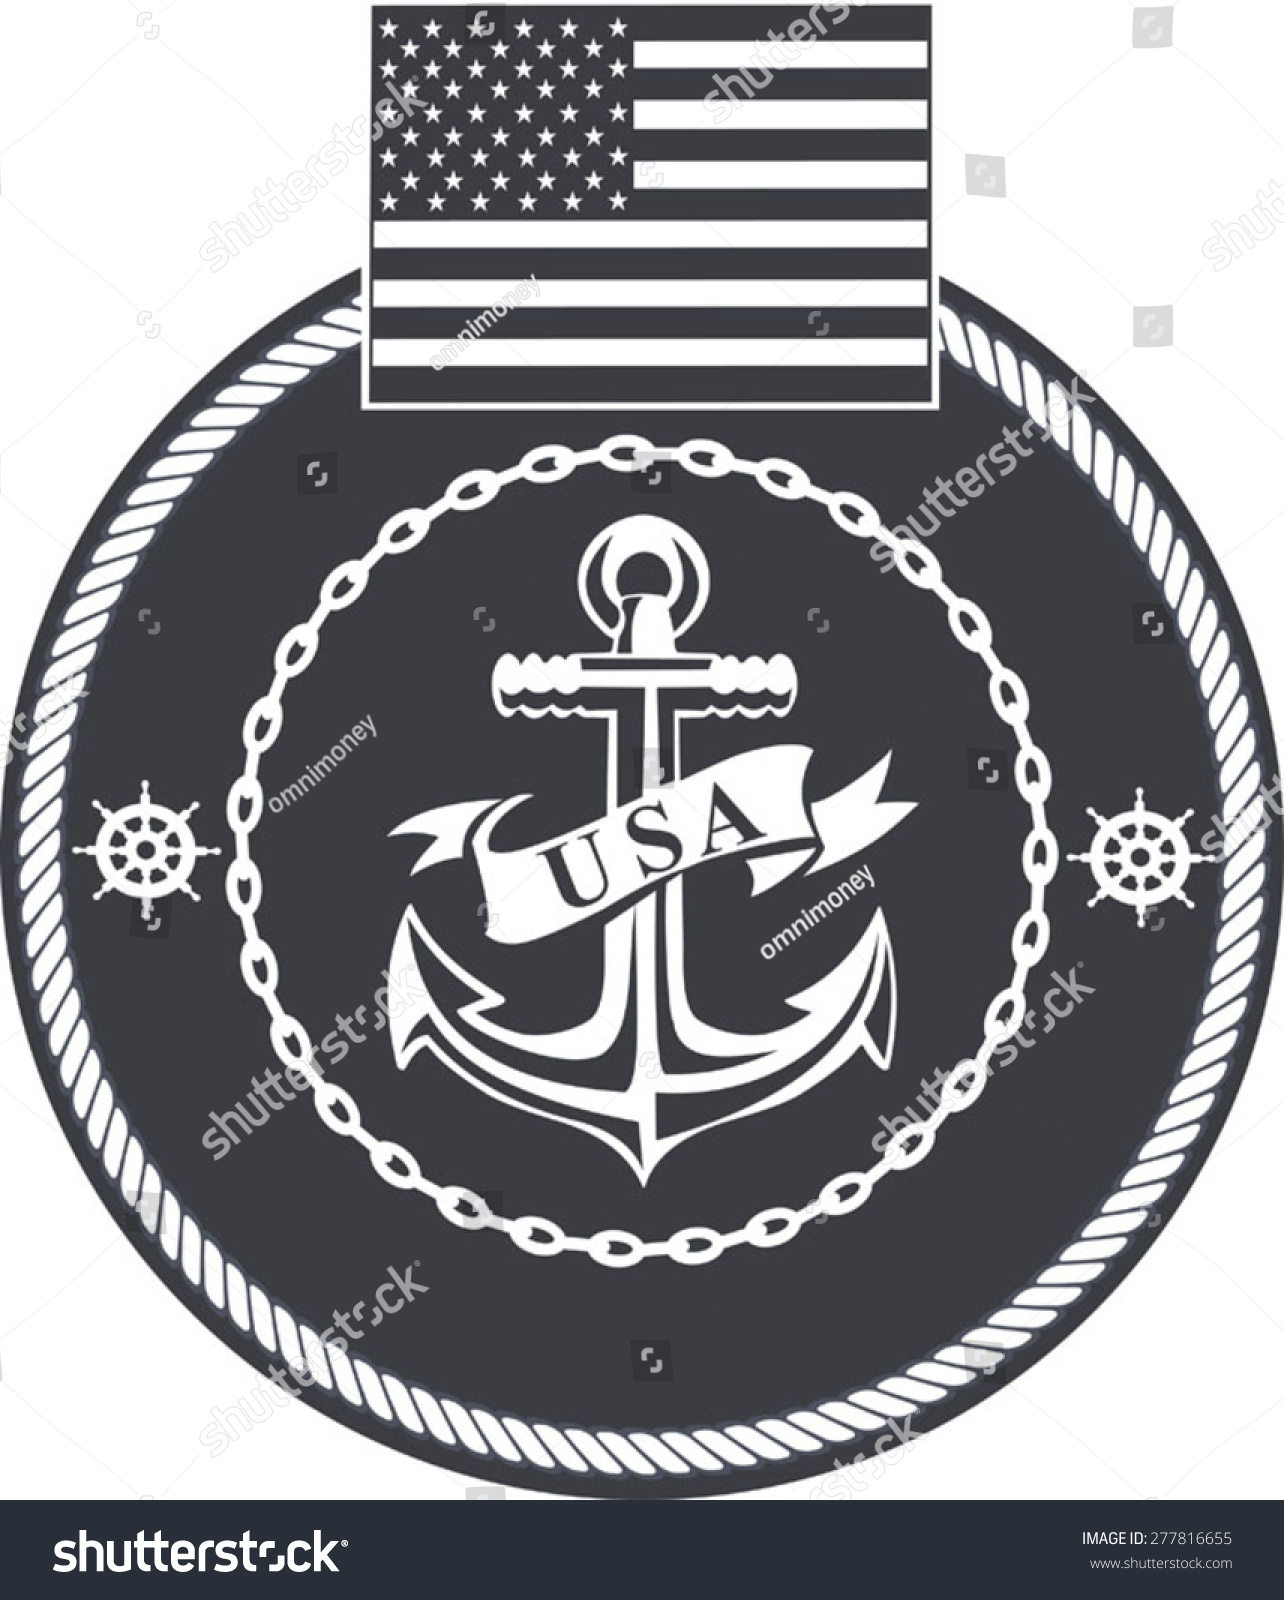 Us Navy Stock Vector Illustration 277816655 : Shutterstock